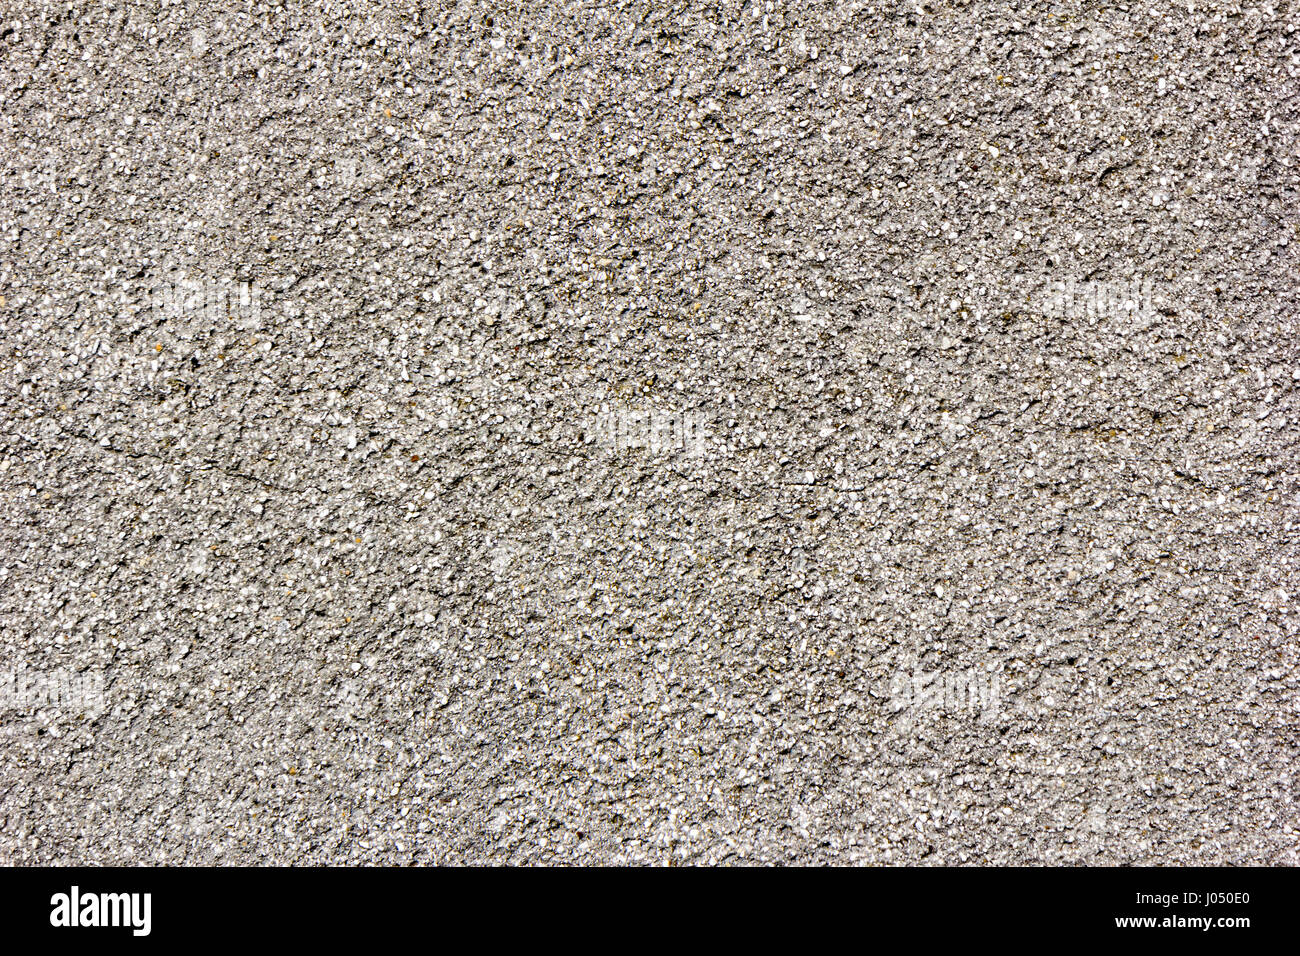 Concrete texture surface Stock Photo